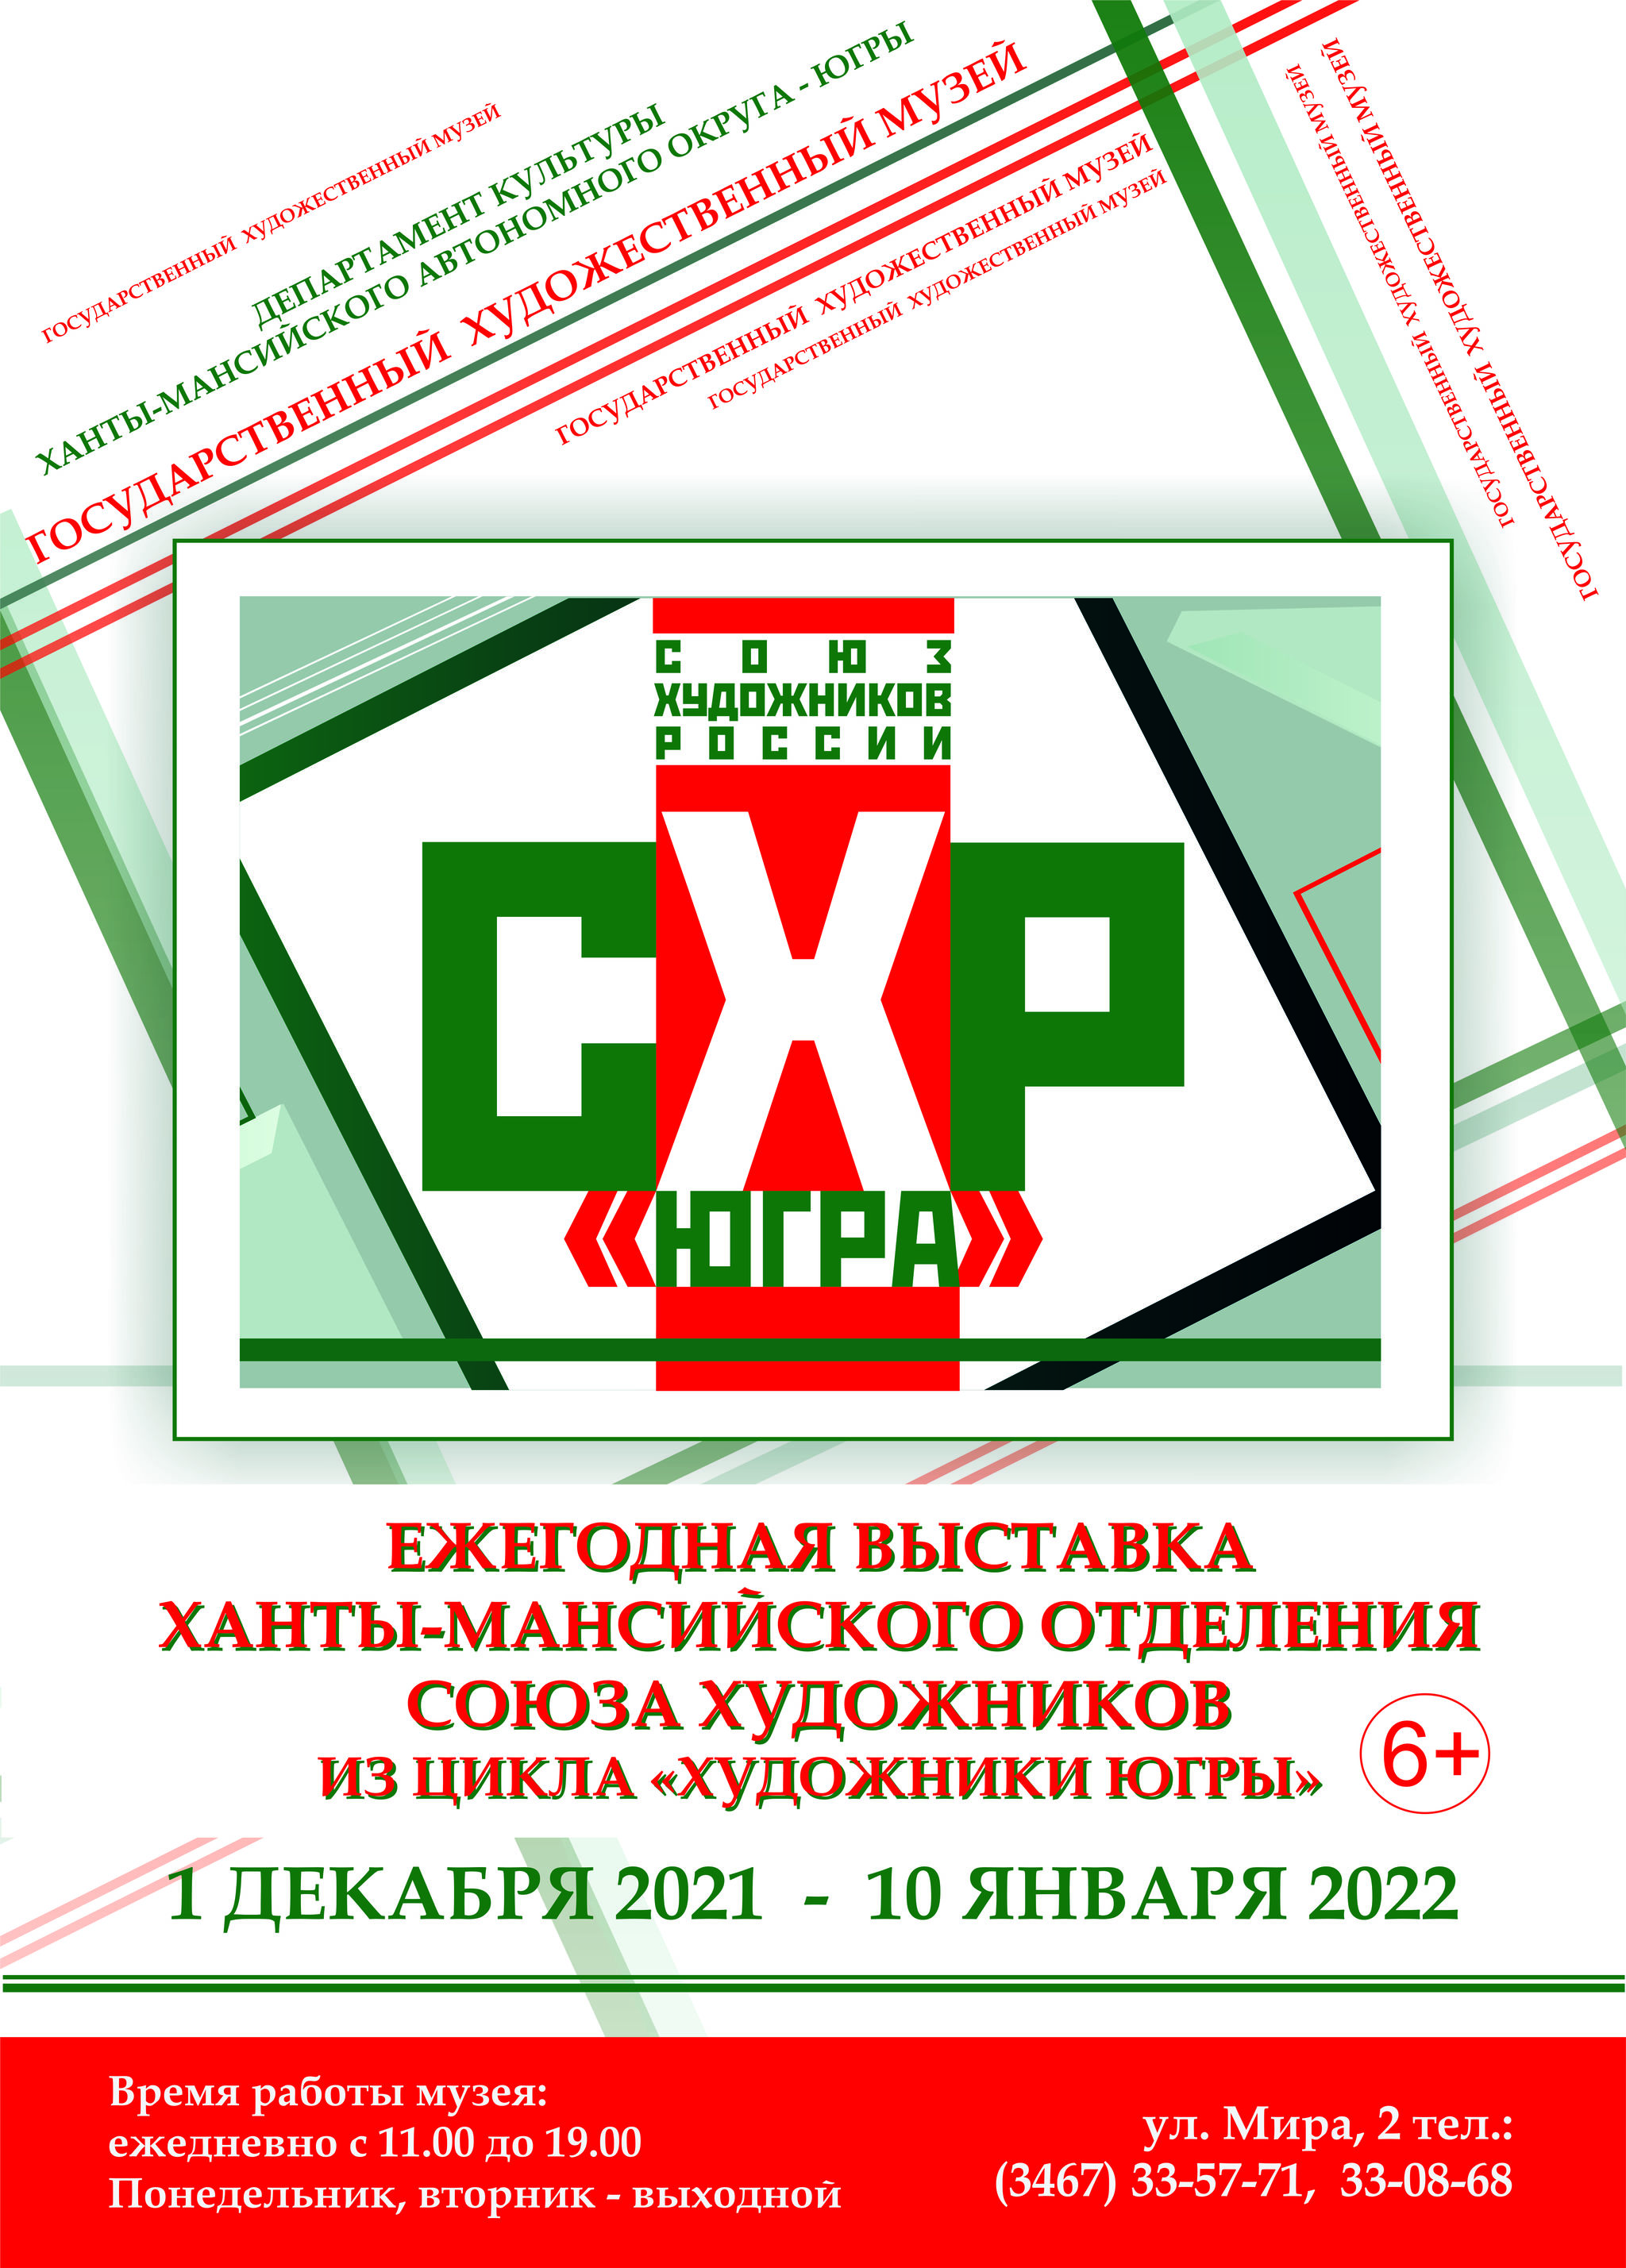 Отчётная выставка Ханты-Мансийского отделения Союза художников России